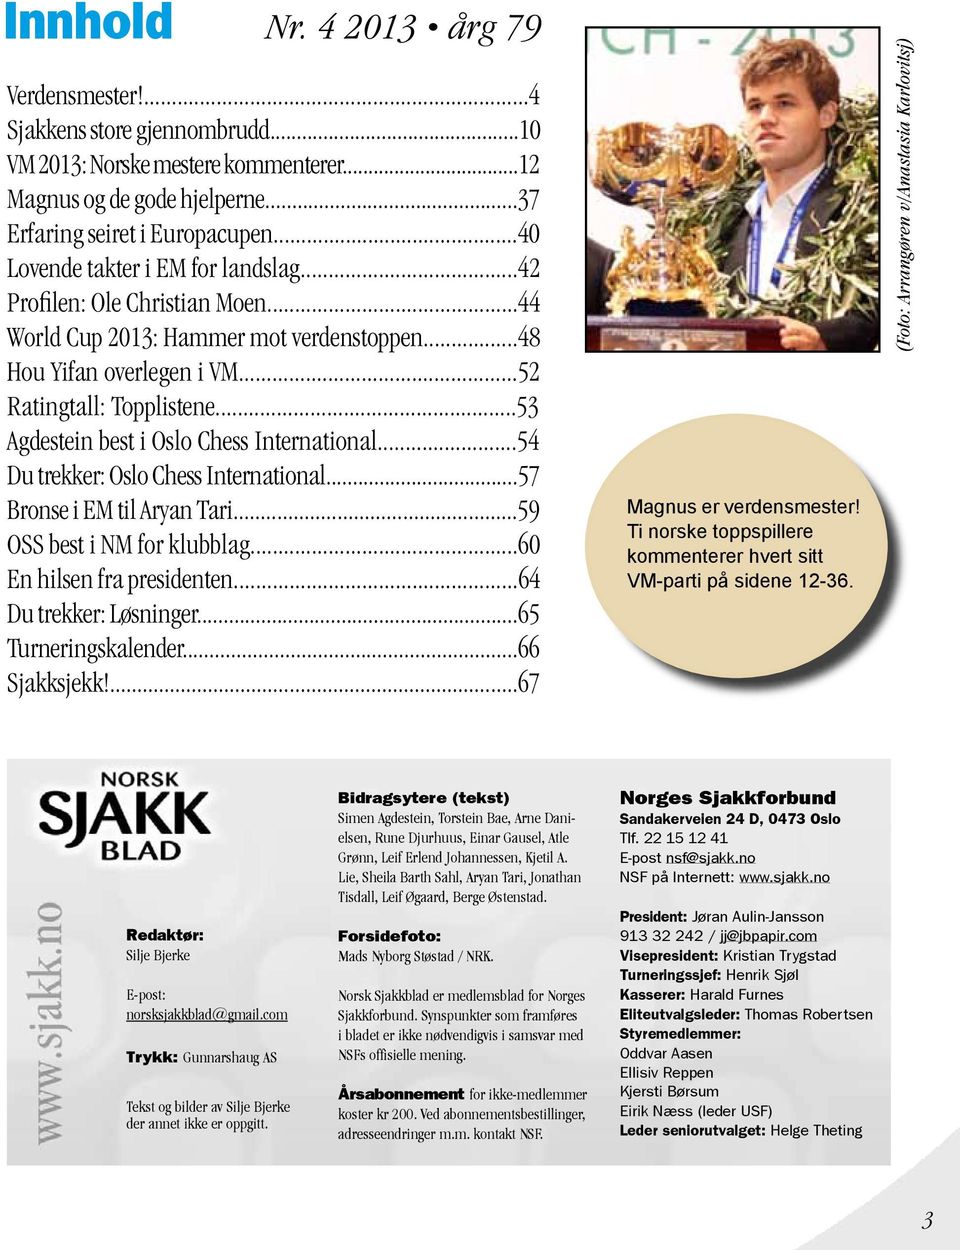 ..53 Agdestein best i Oslo Chess International...54 Du trekker: Oslo Chess International...57 Bronse i EM til Aryan Tari...59 OSS best i NM for klubblag...60 En hilsen fra presidenten.